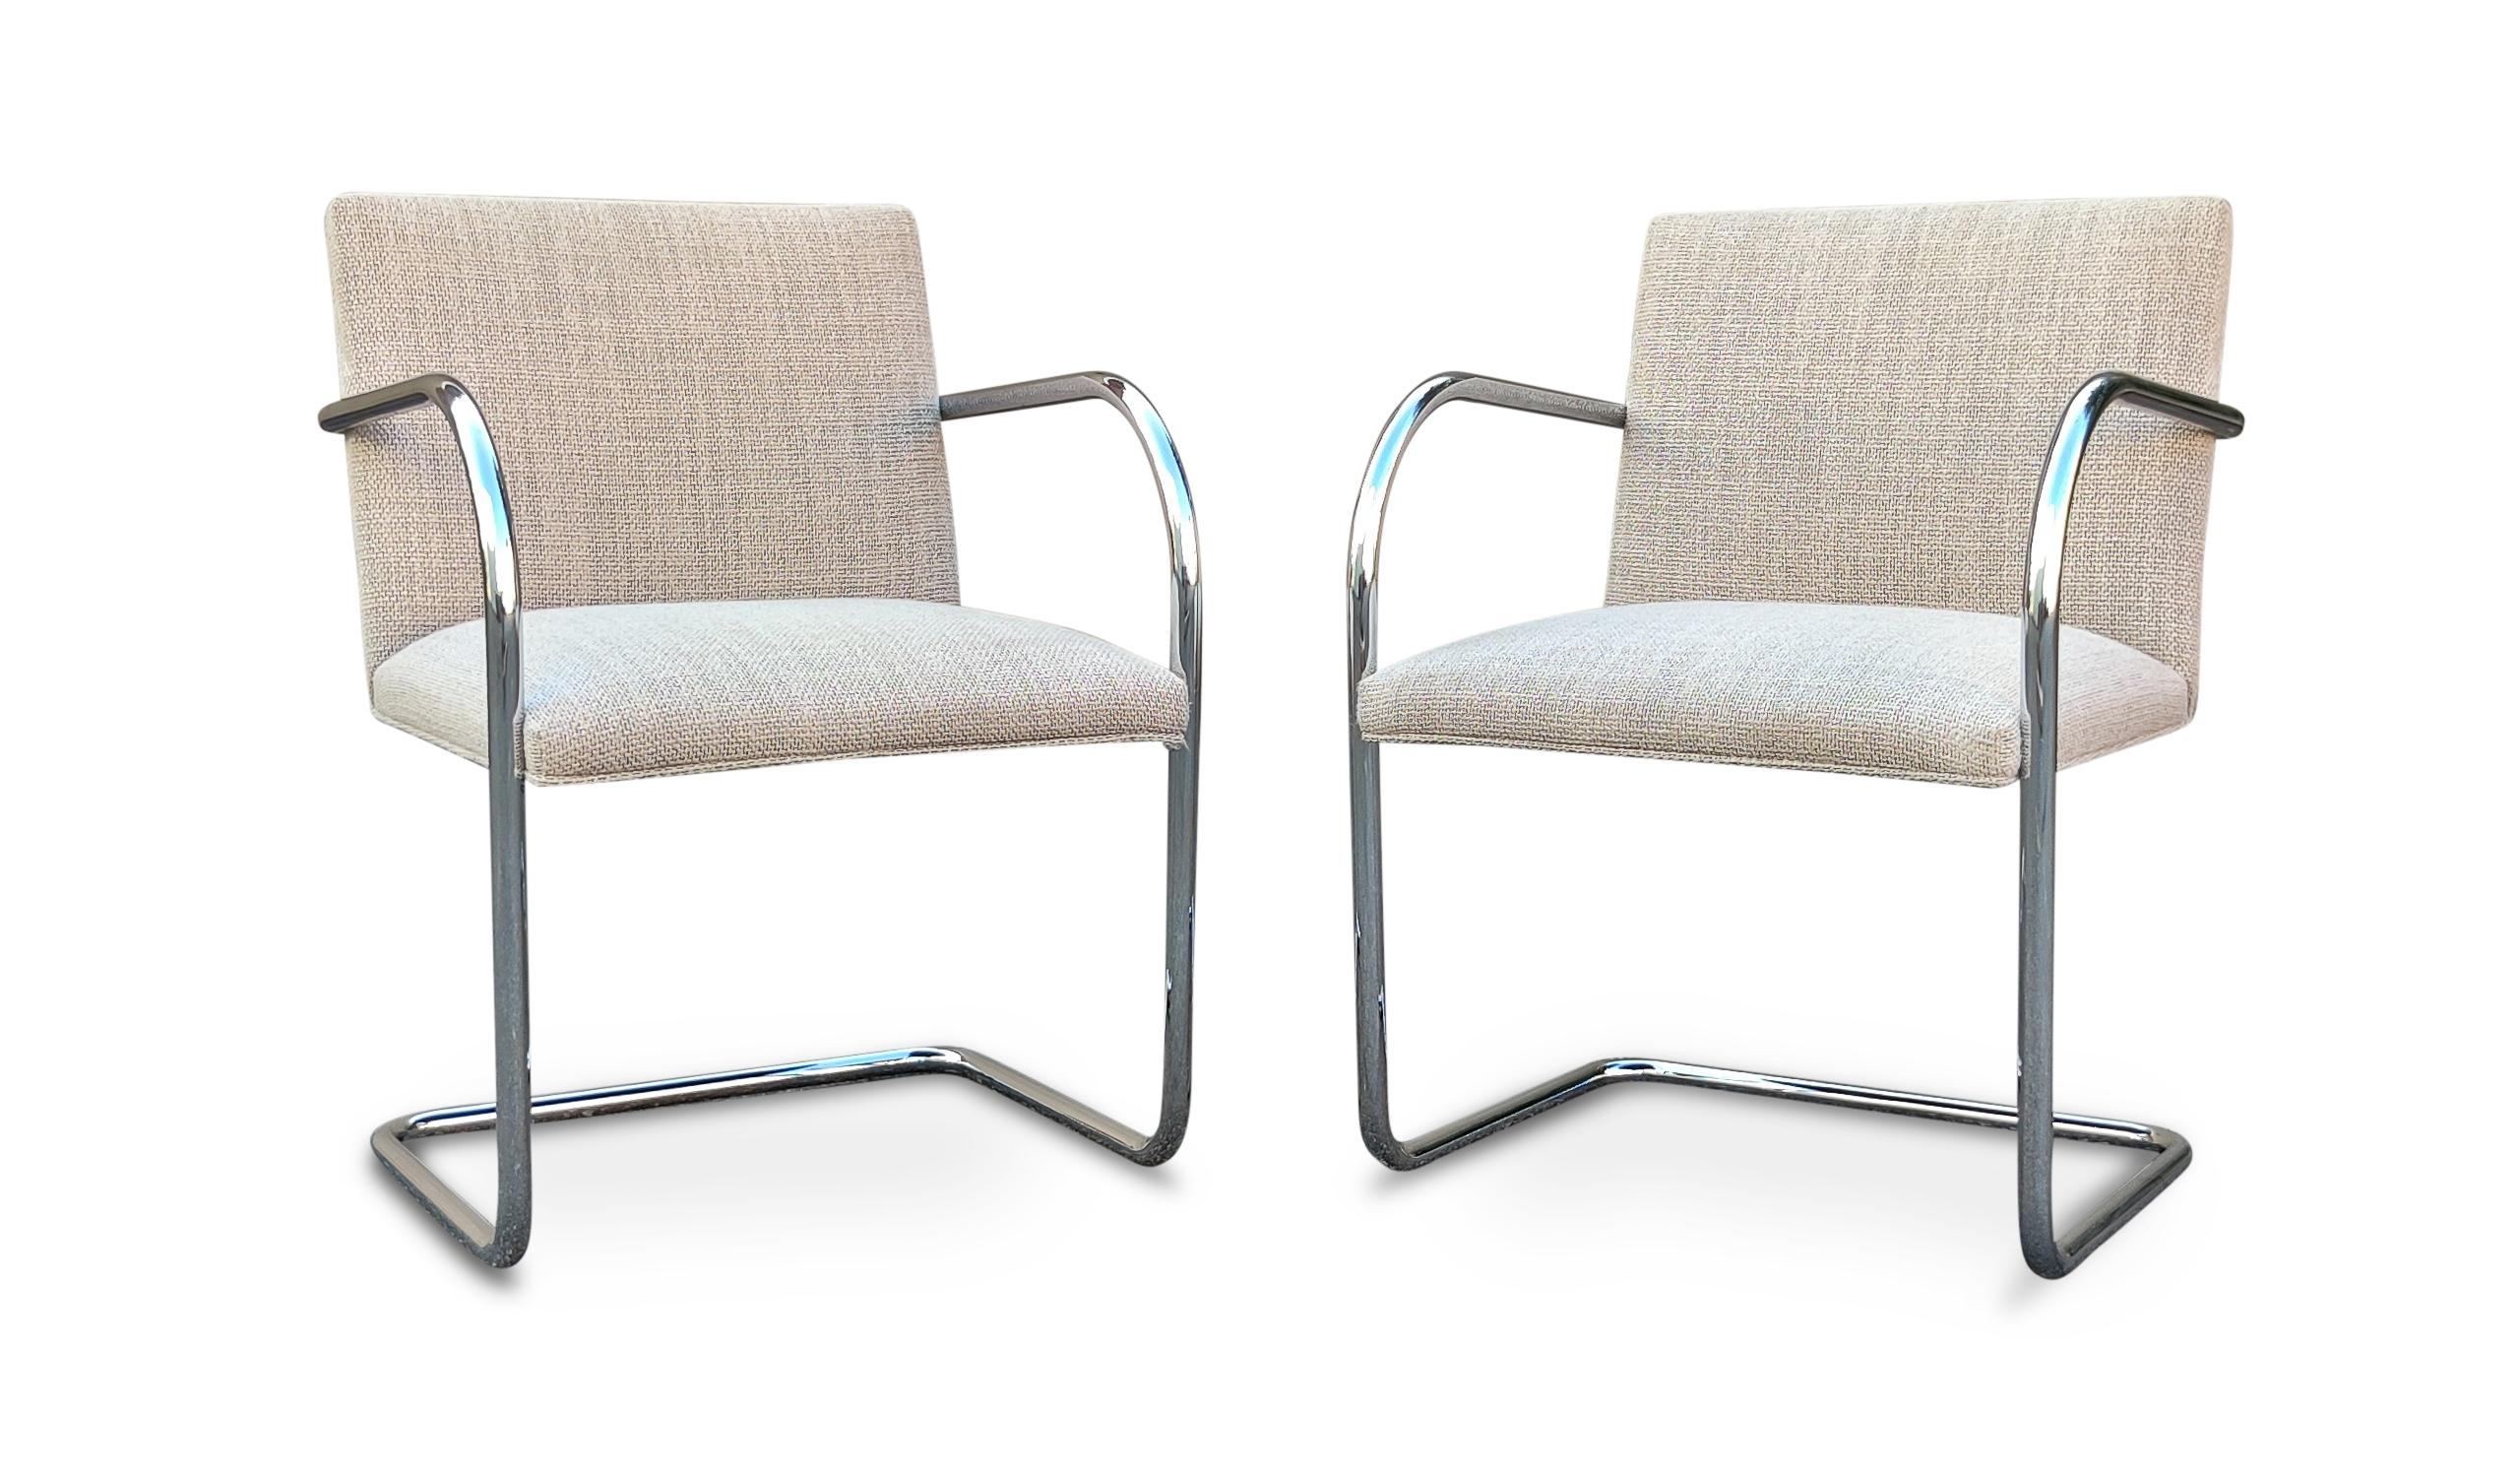 Ein schöner und vollständiger Satz von 10 Brünner Sesseln, entworfen von Ludwig Mies van der Rohe und hergestellt von Knoll. Sie sind mit verchromten Rohrrahmen und hellgrauem Wollmischgewebe ausgestattet. Die Stühle sind in sehr gutem und kaum